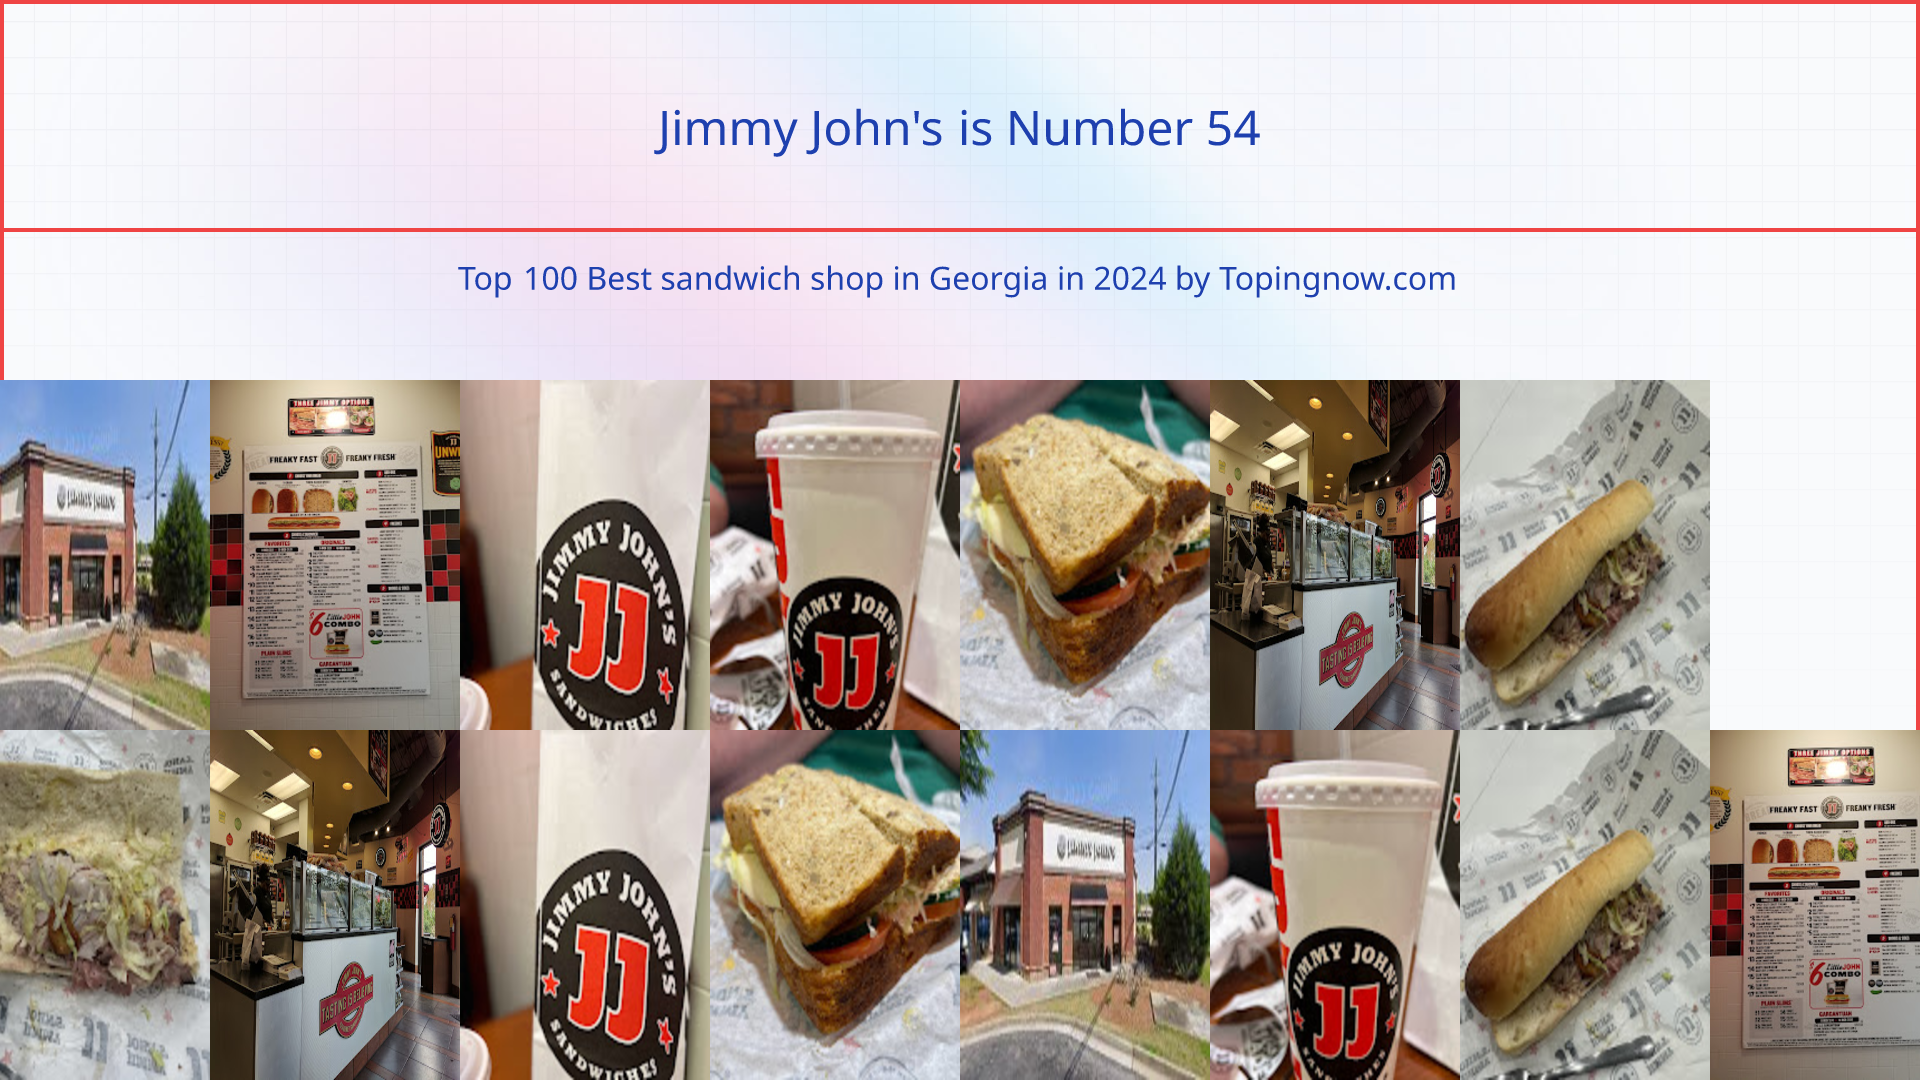 Jimmy John's: Top 100 Best sandwich shop in Georgia in 2024